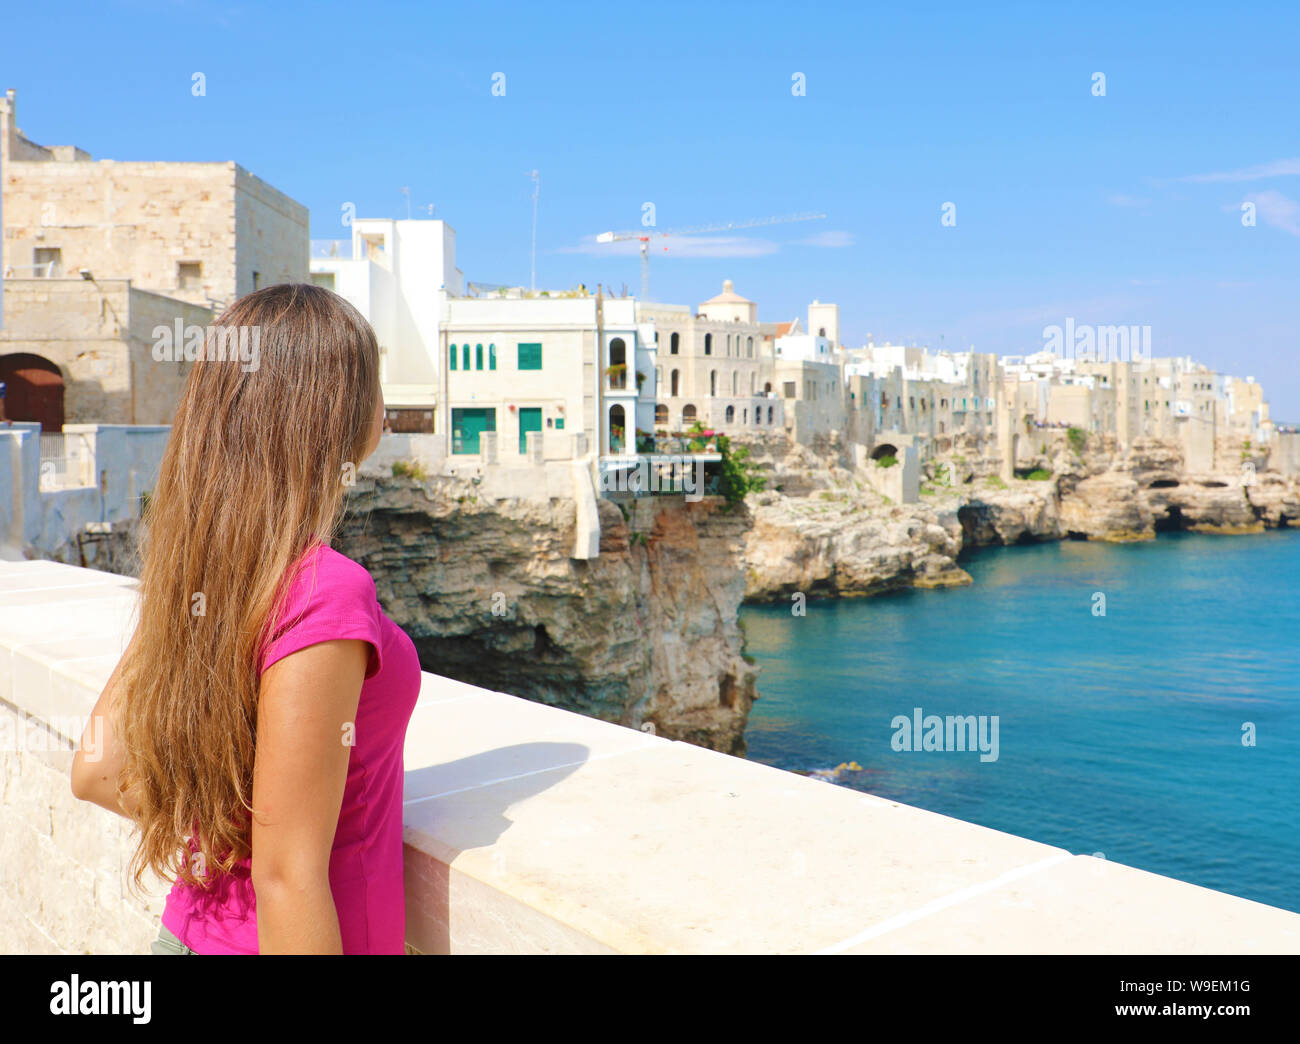 Vista posterior de la hermosa joven en Polignano a Mare town en el Mar Mediterráneo, Italia. Foto de stock